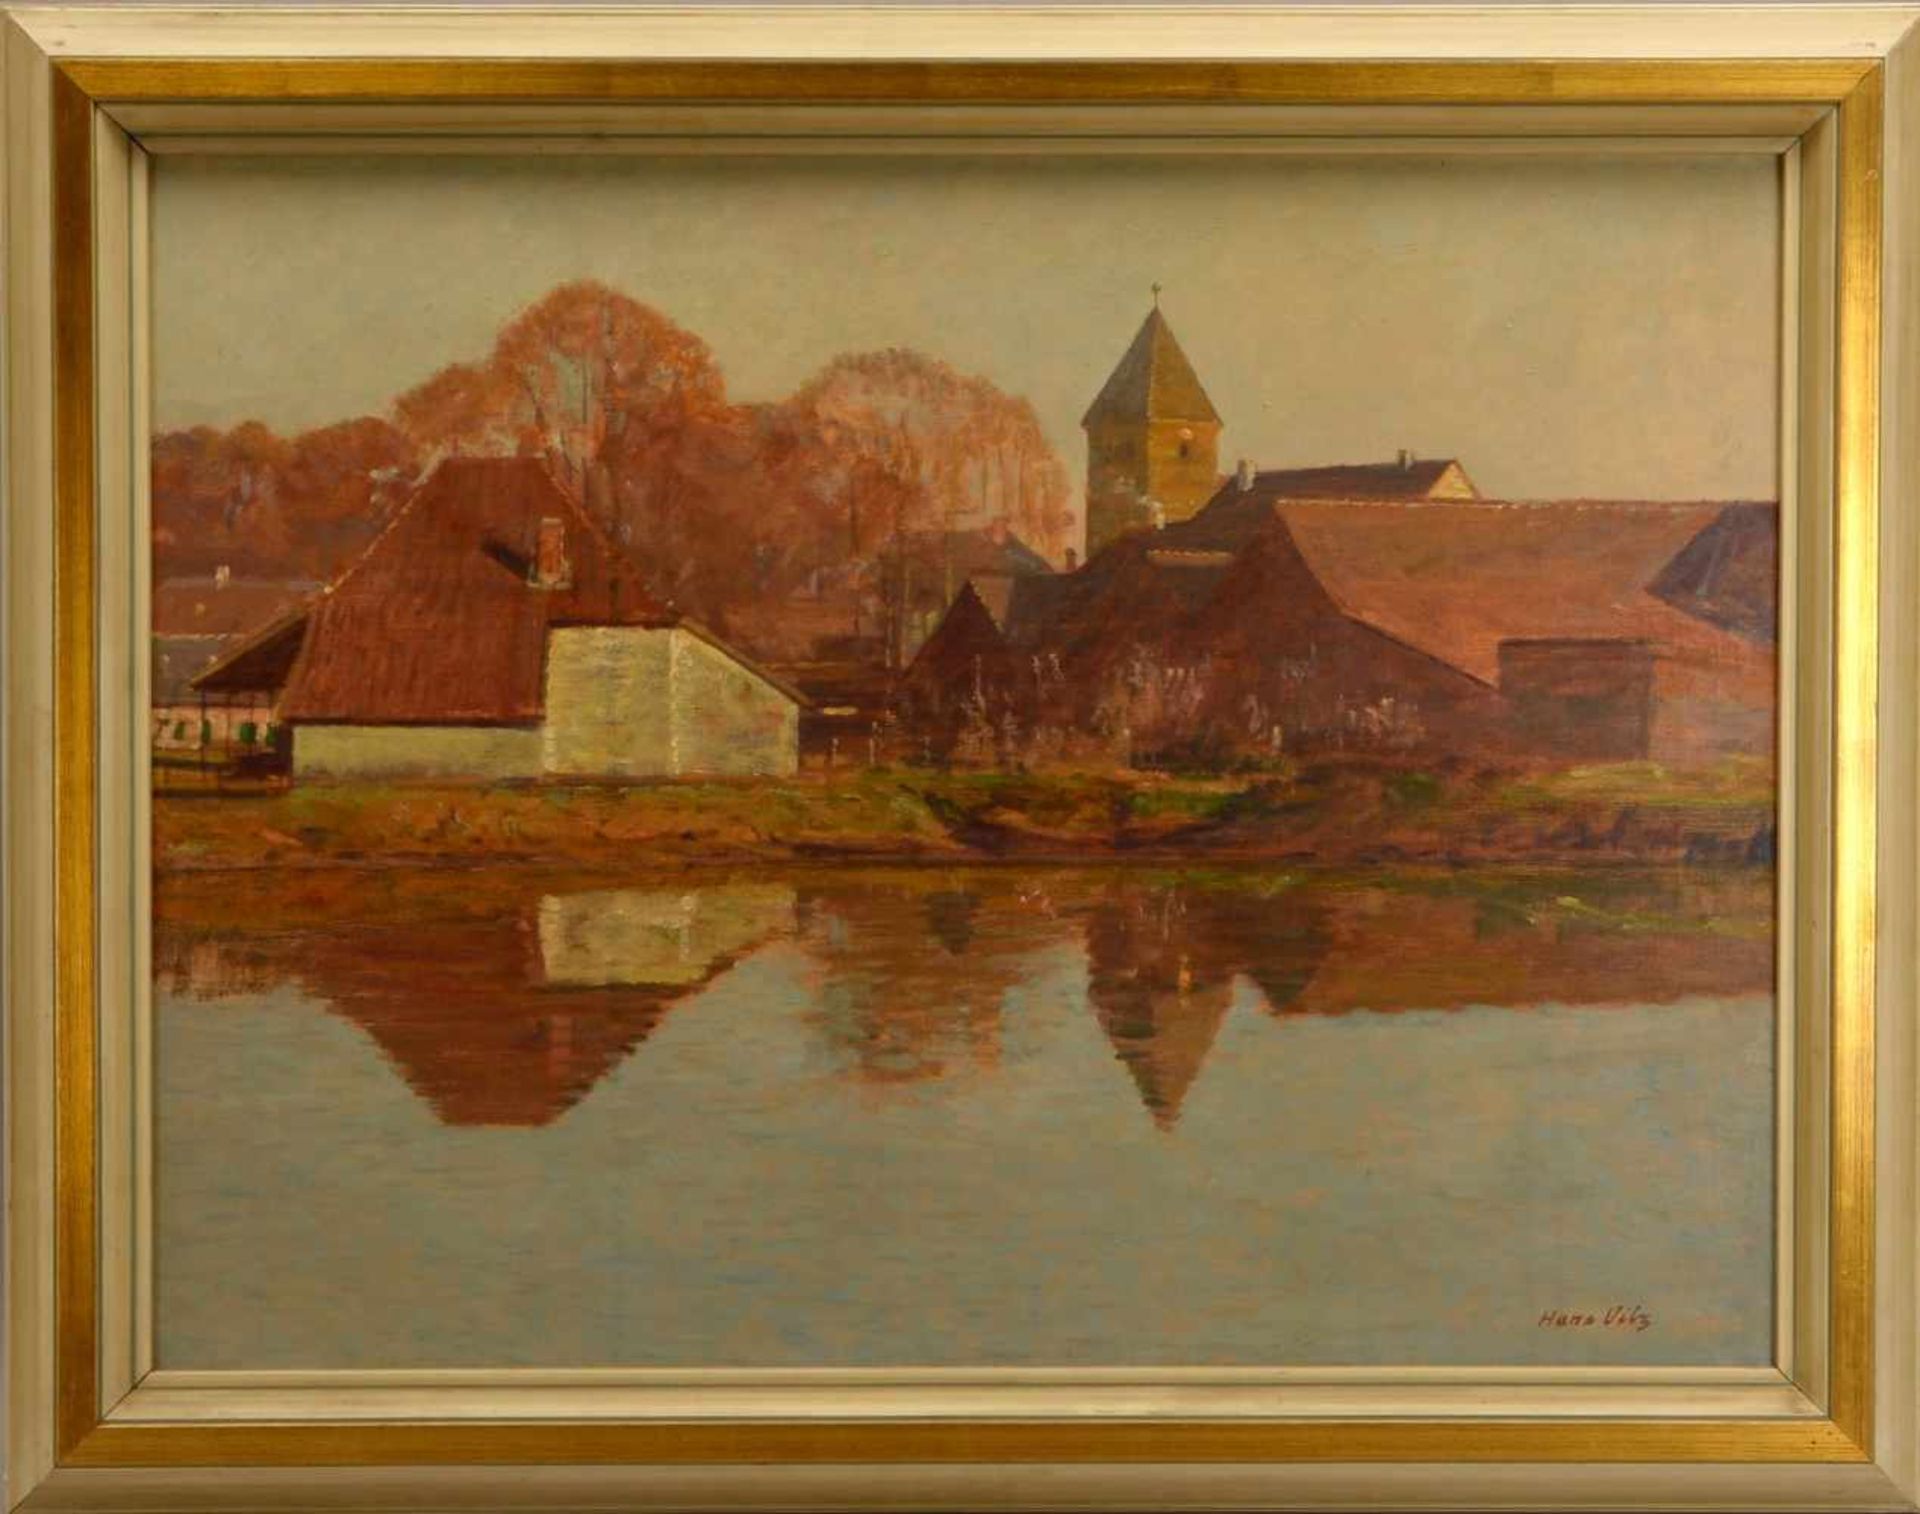 Vilz, Hans (1902 Essen - 1971 Düsseldorf), 'Dorf am Fluss', Öl/Lw, unten rechts signiert; Bildmaße